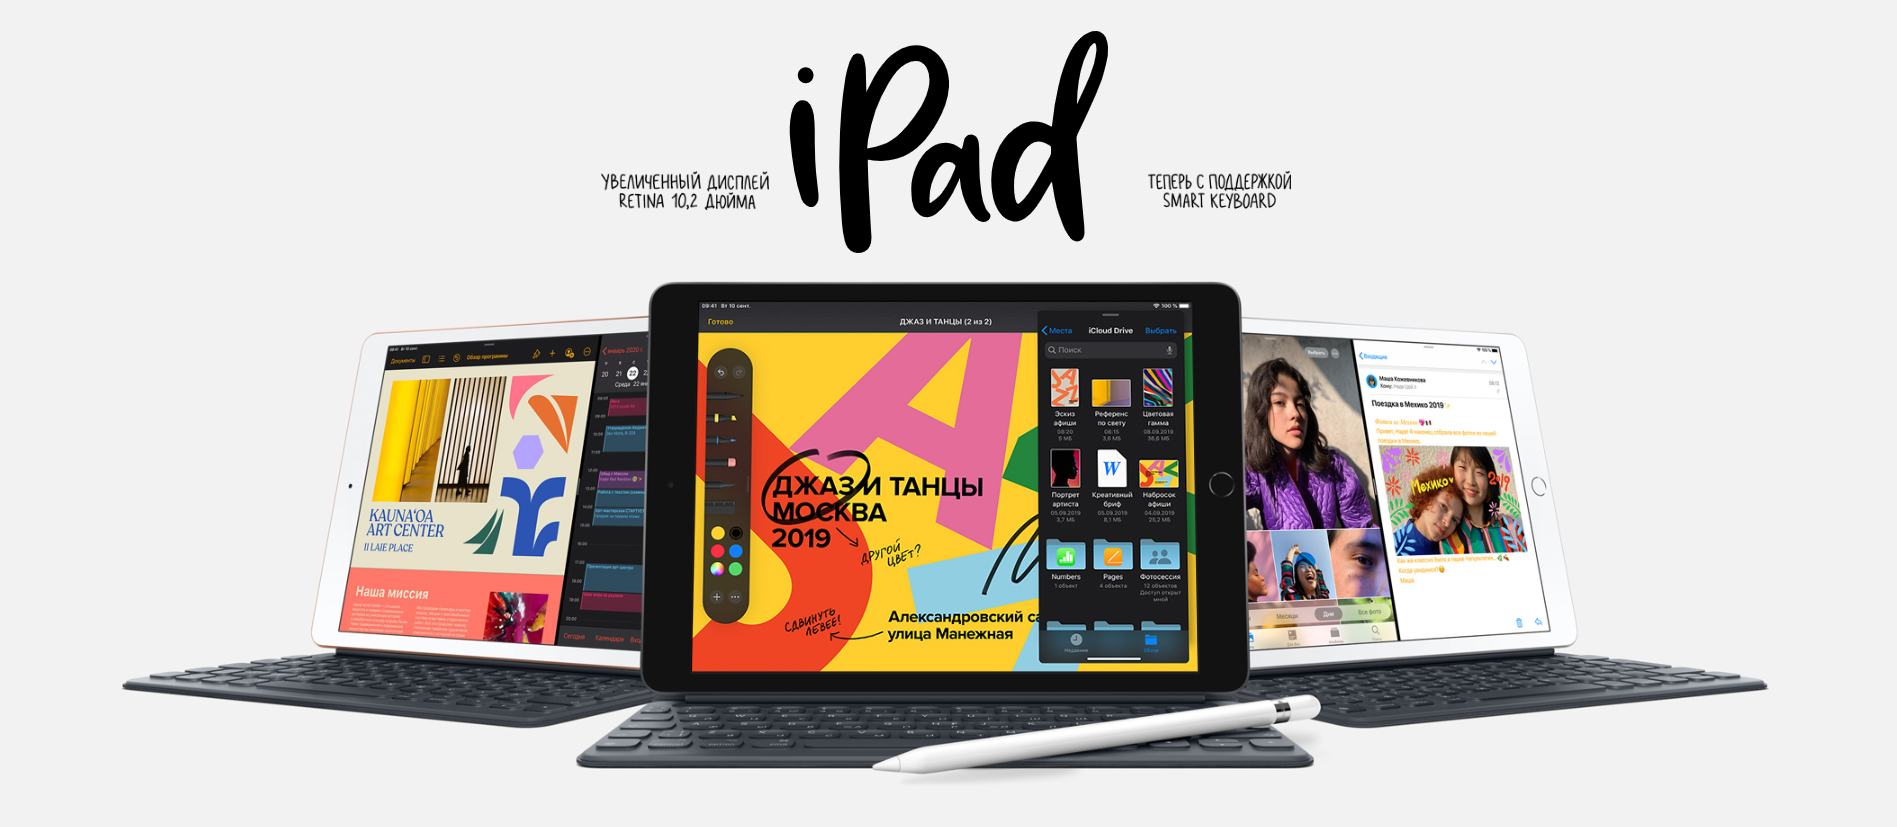 iPad 2019 10.2